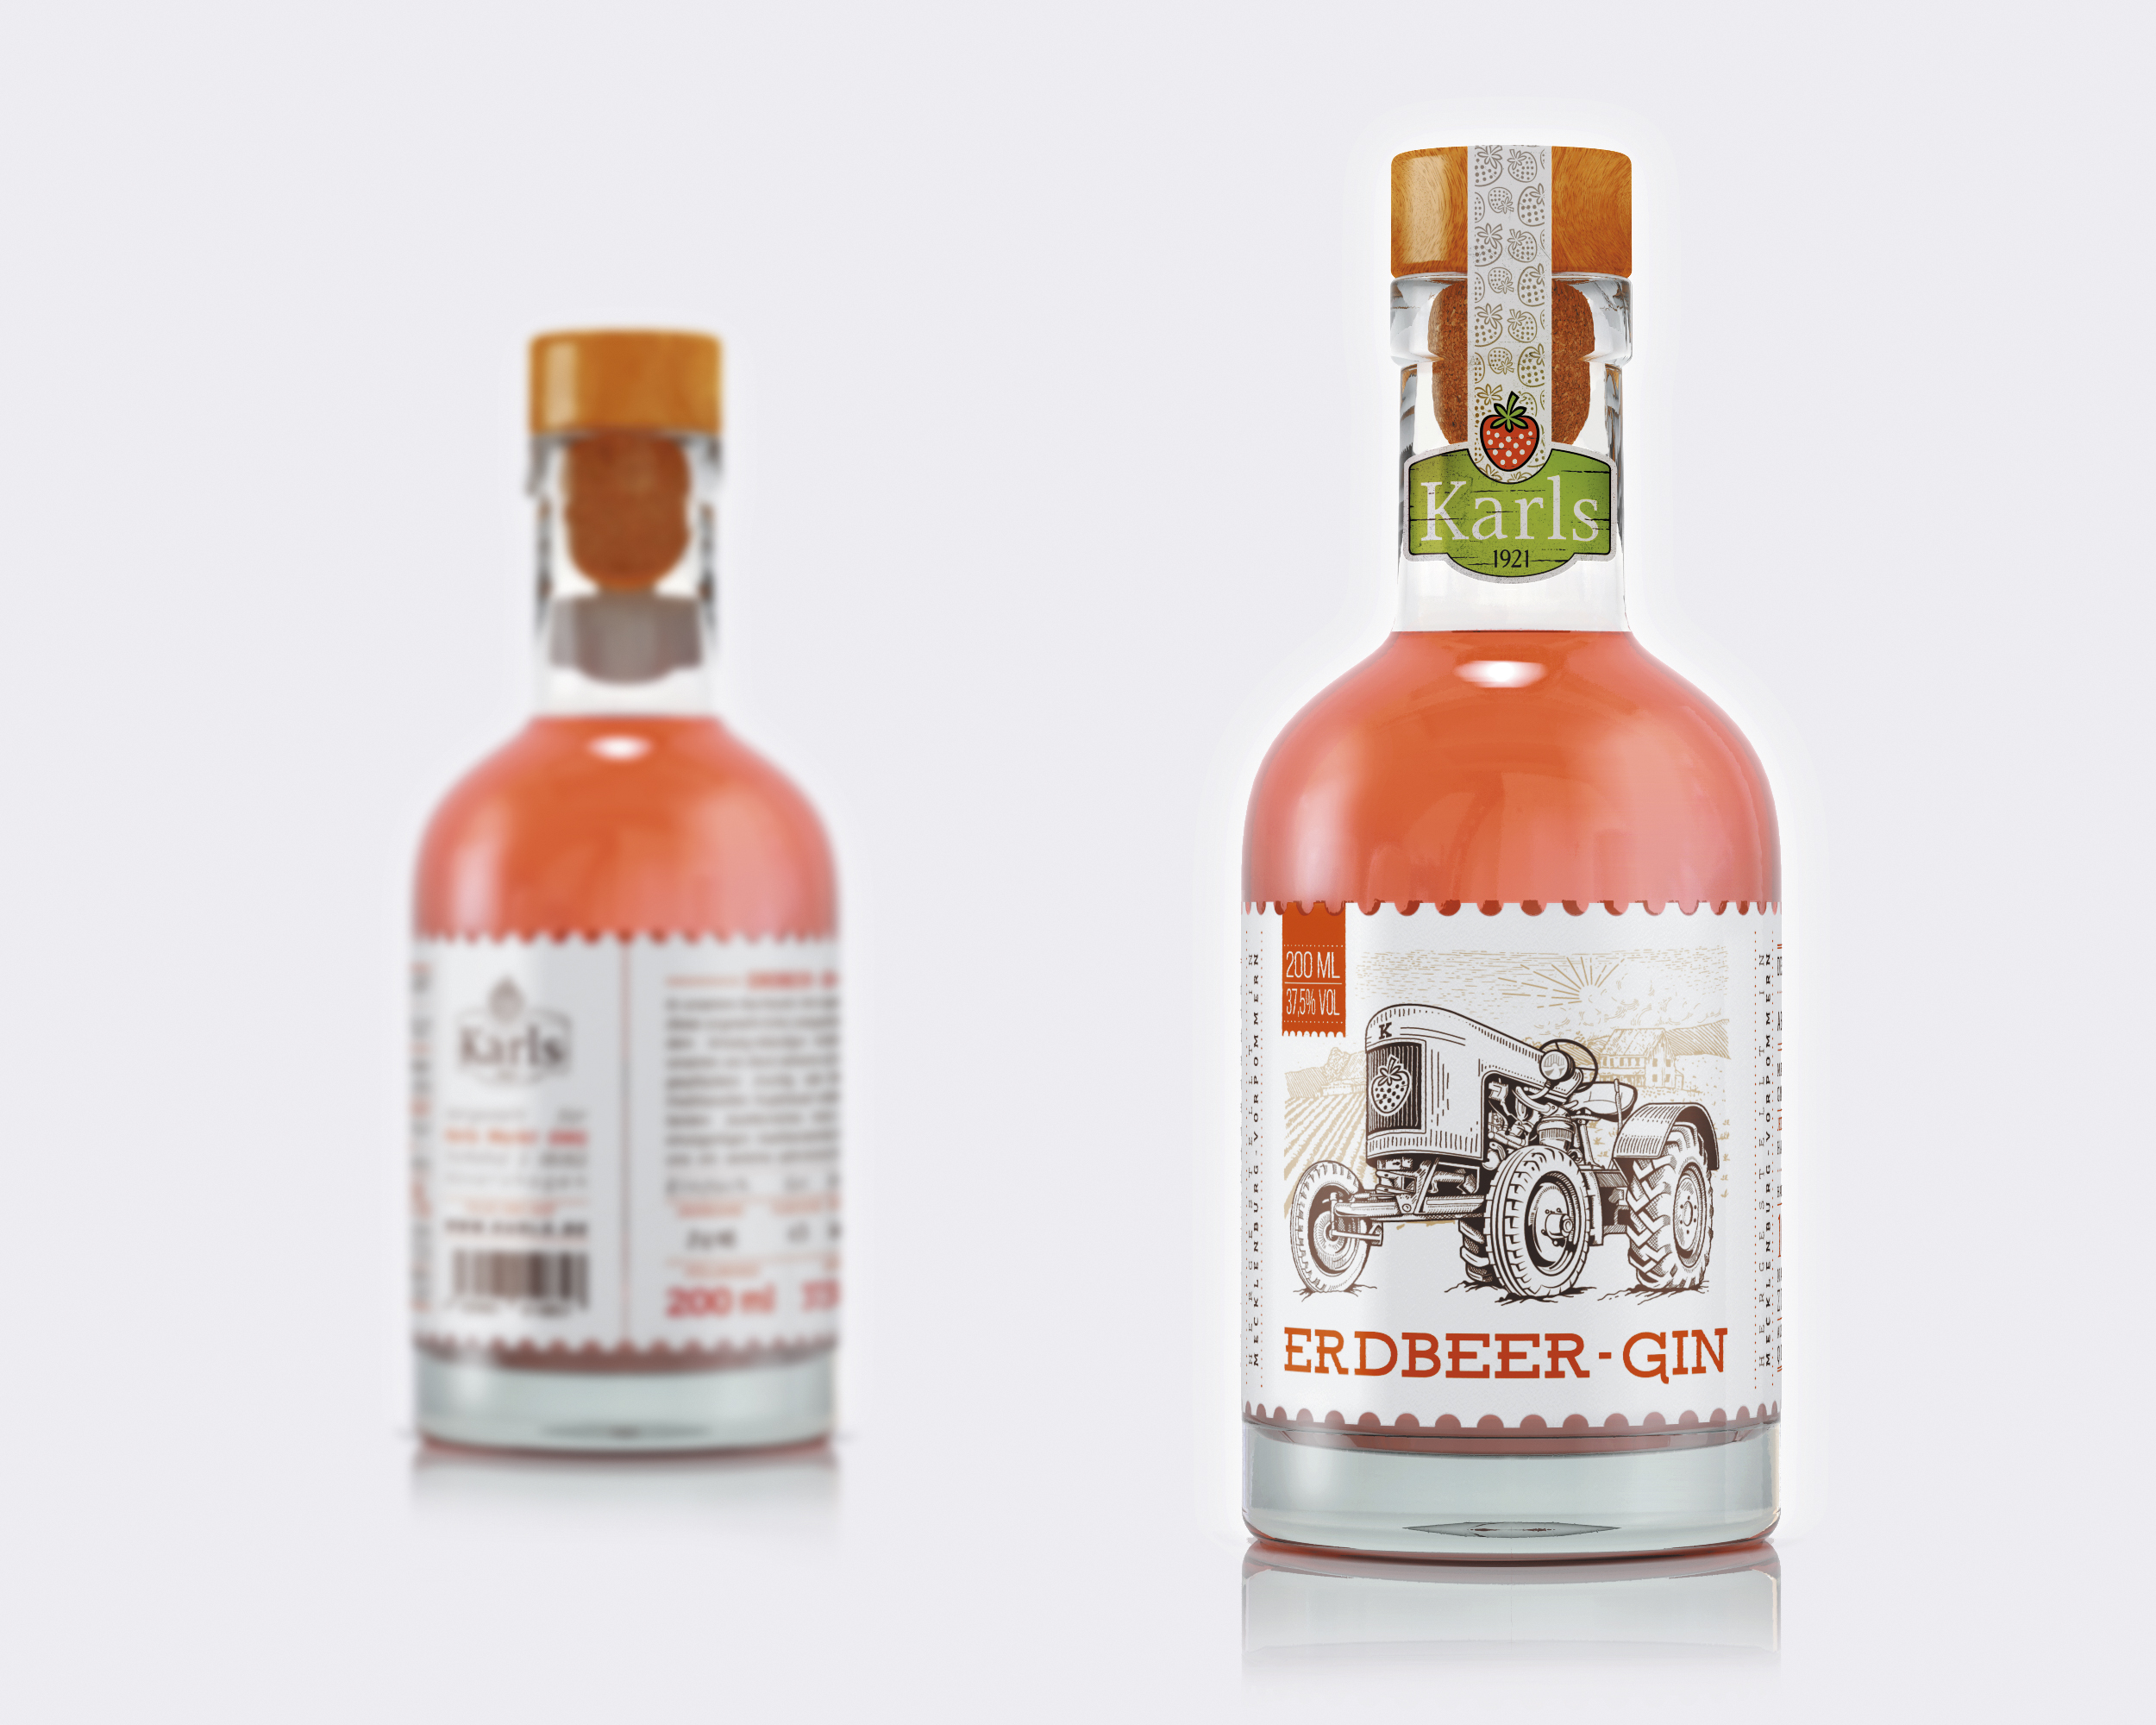 Lonely Bird Studio – Erdbeer-Gin Label Design